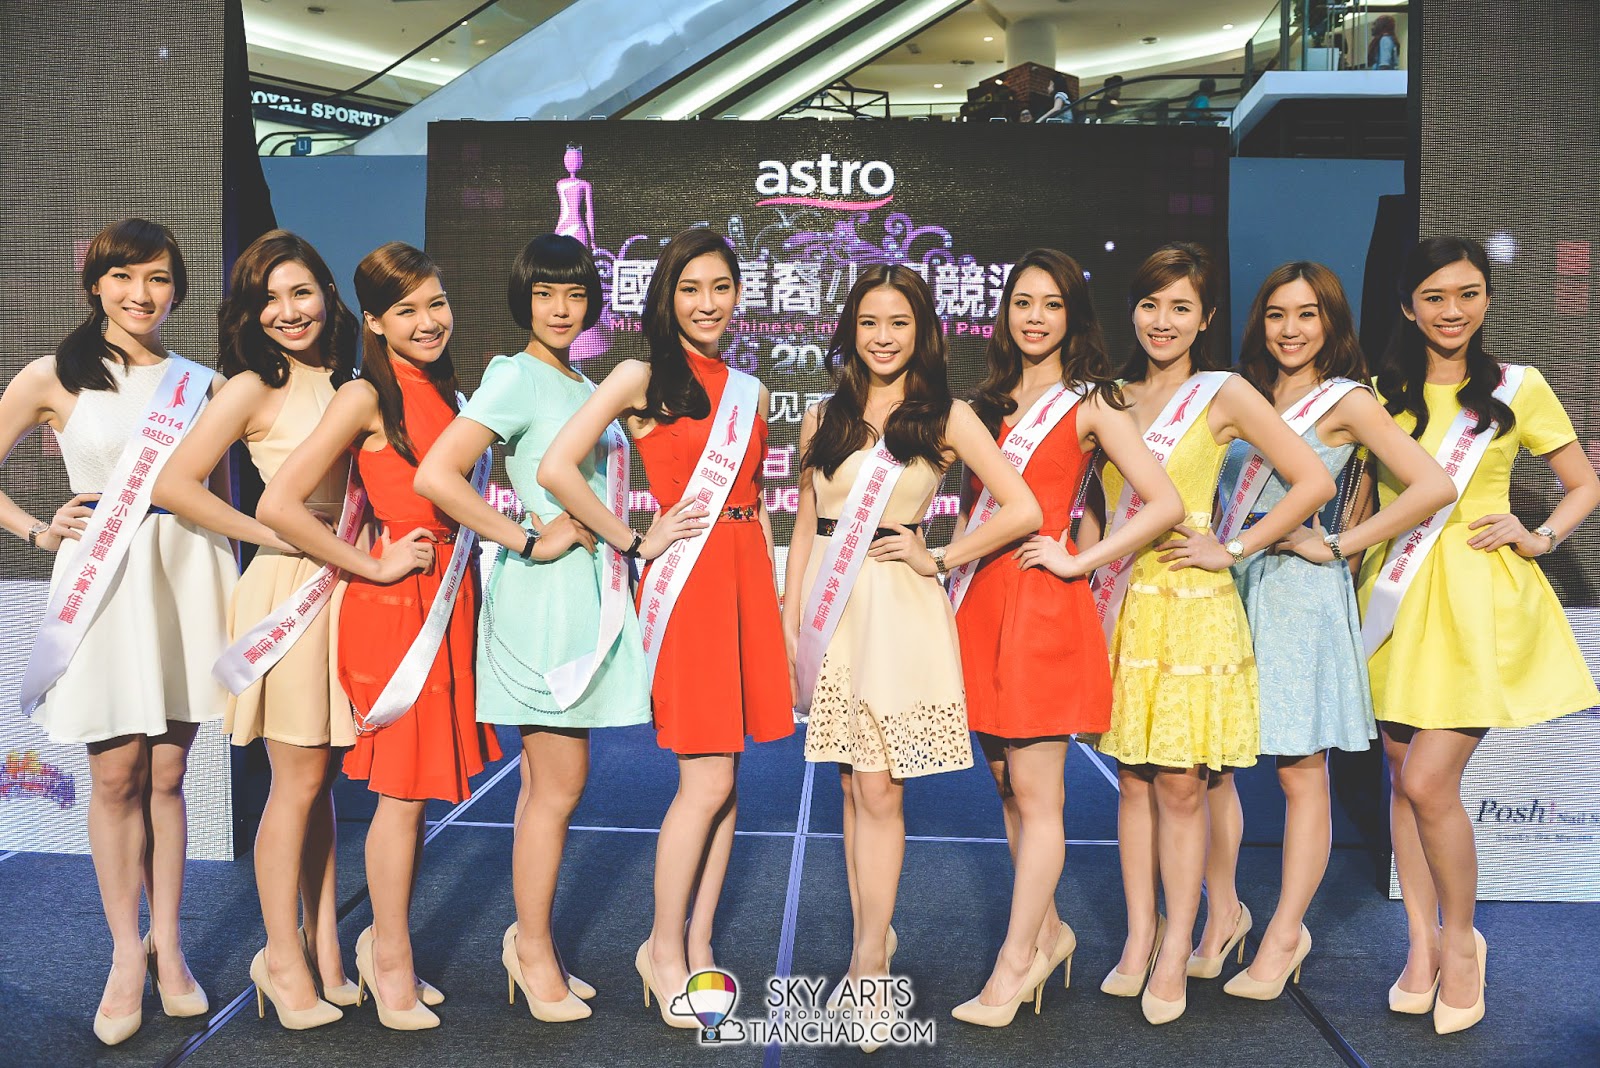 《Astro国际华裔小姐竞选2014》的佳丽们换上小洋装展现时代女性的自信美